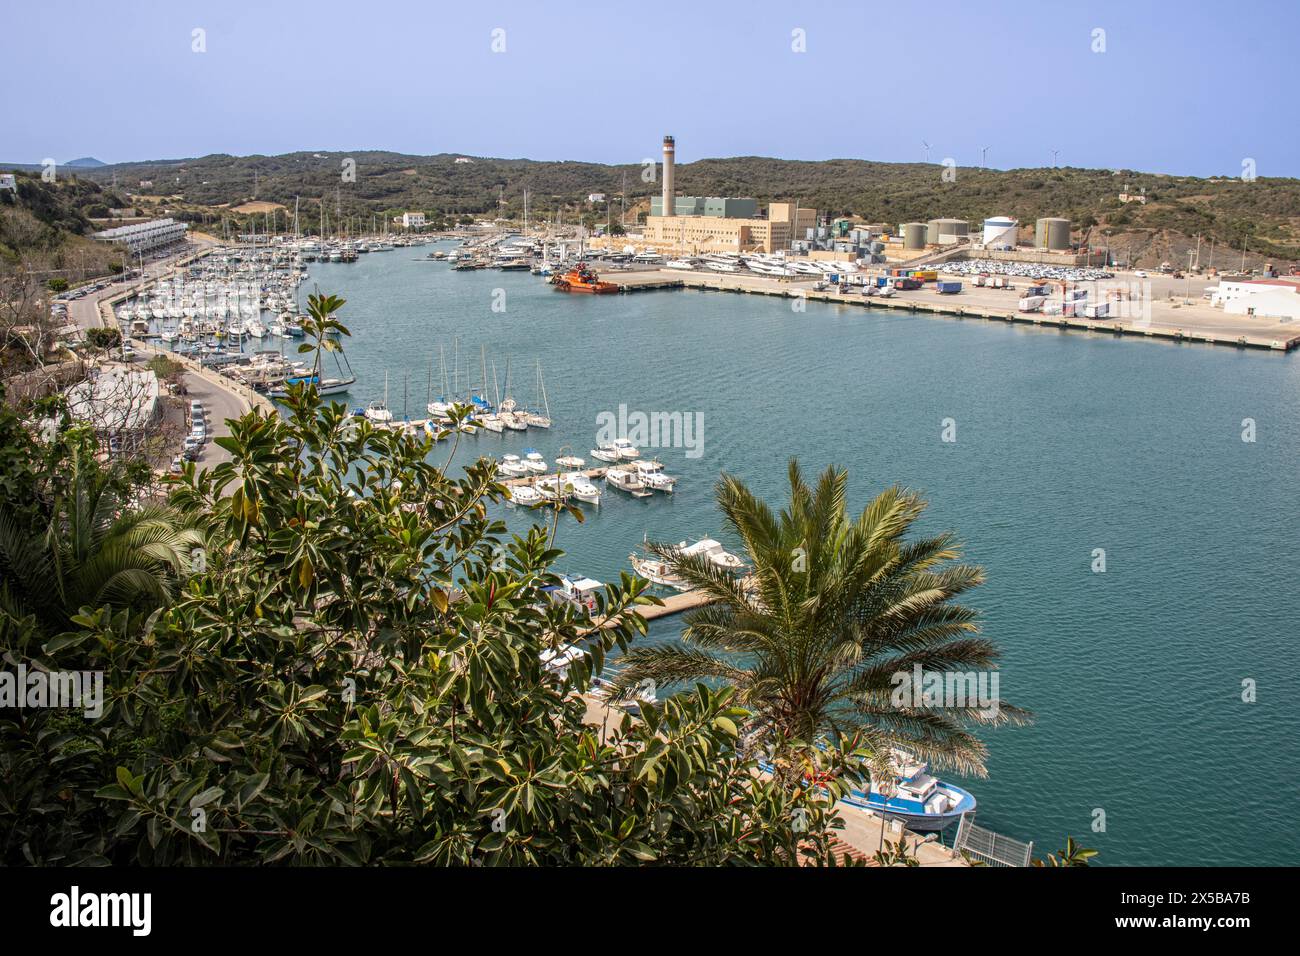 Fotografía panorámica captada desde lo alto de un mirador en el puerto de Mahón. Es una vista impresionante. Menorca, España Stock Photo